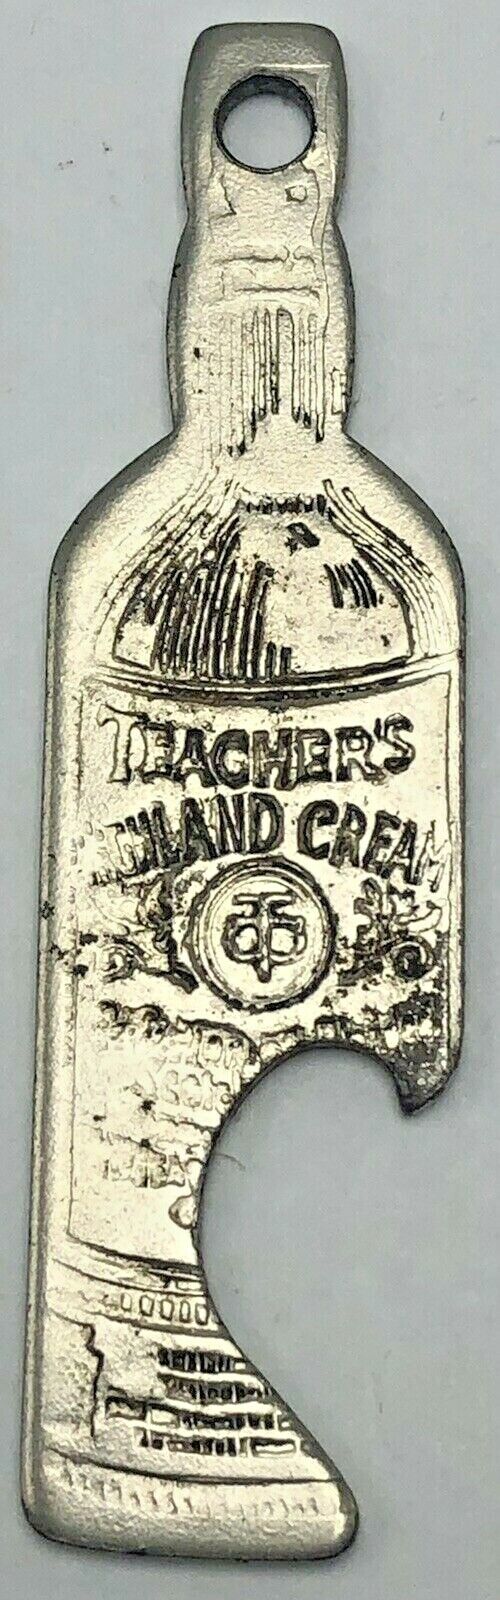 Vintage Teacher\'s Highland Cream Blended Scottish Whisky Bottle Opener